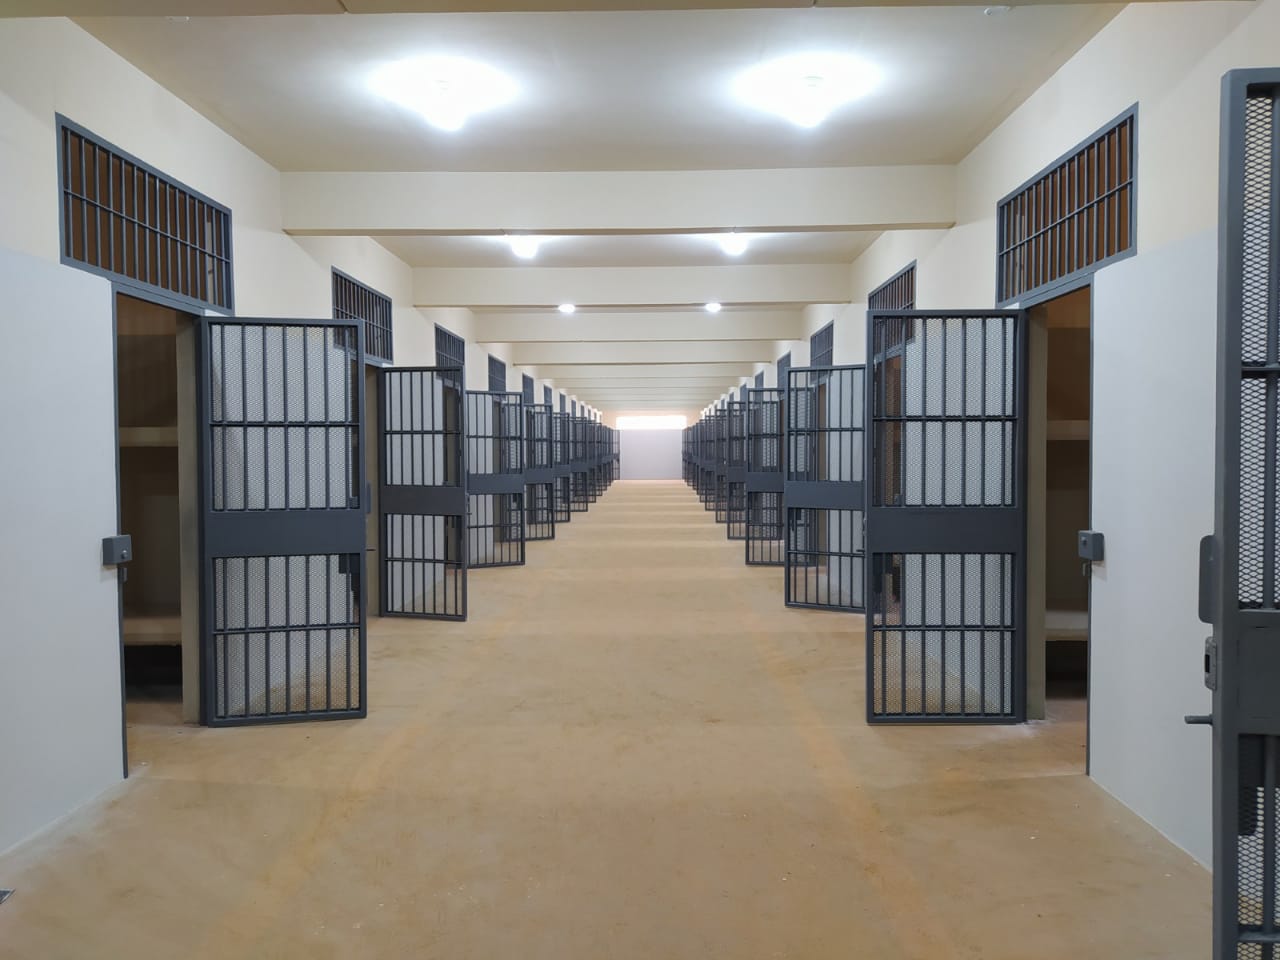 el futuro centro penitenciario tendrá la capacidad para albergar a unos 1.650 reclusos